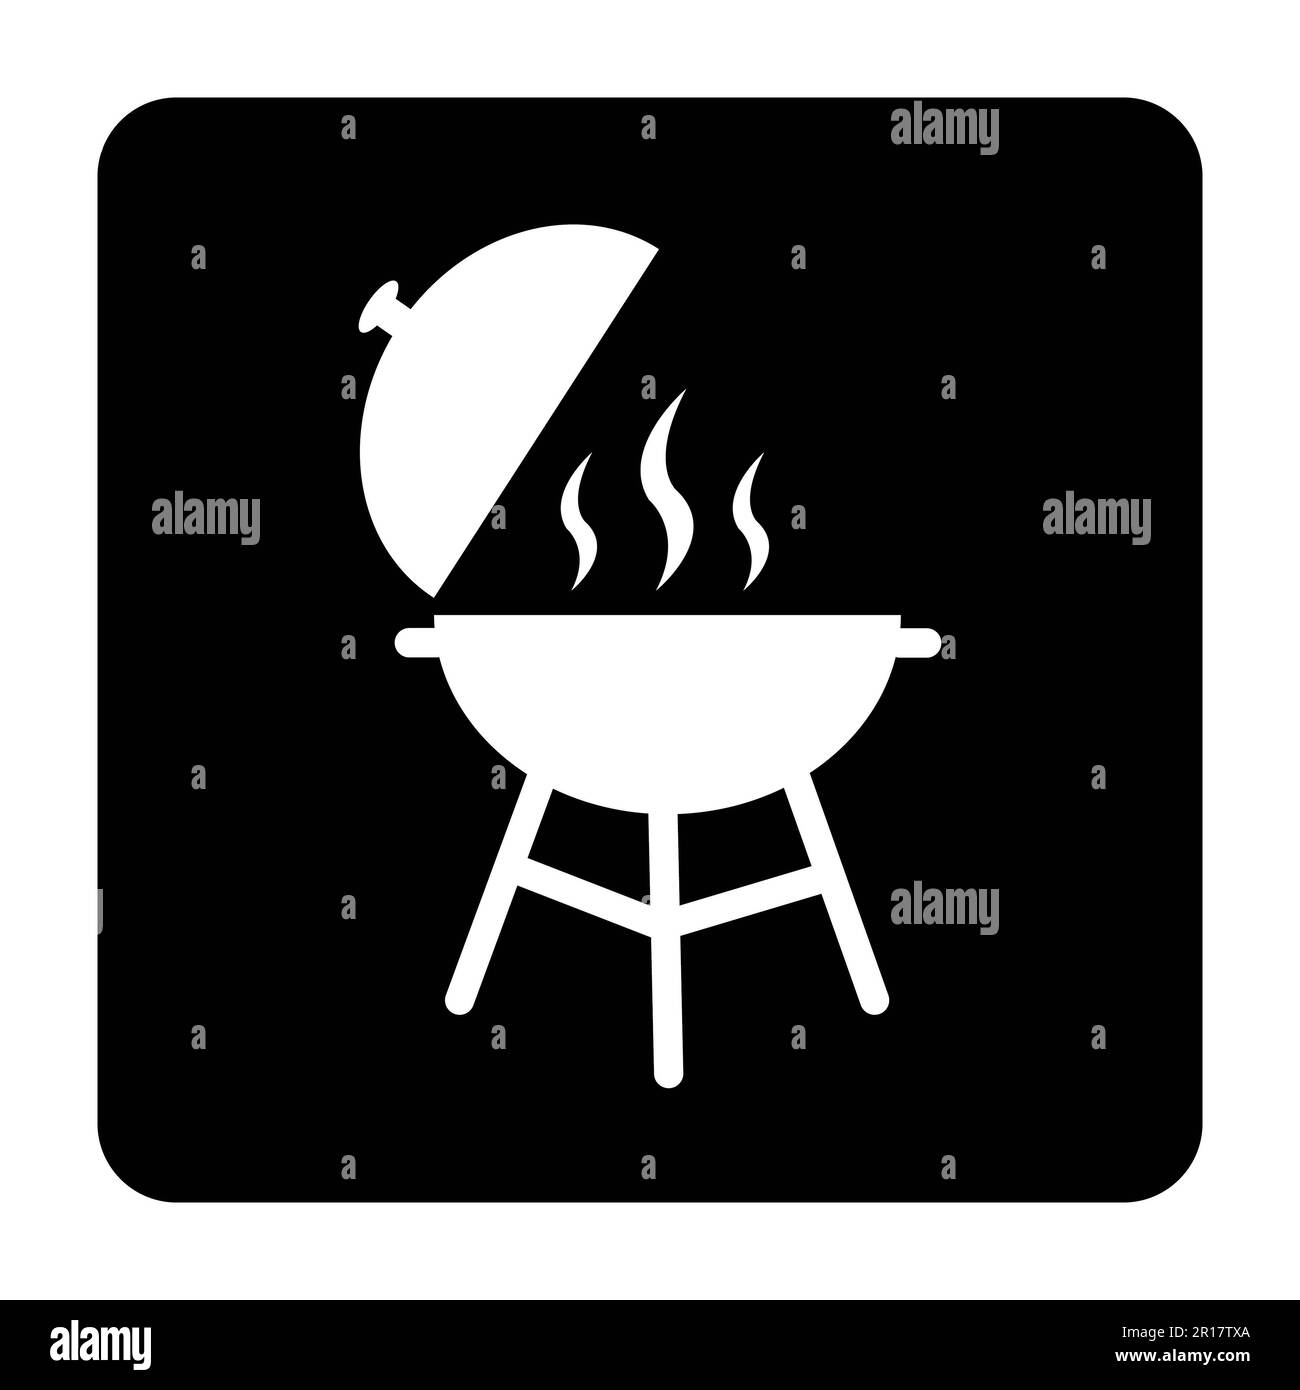 Icône barbecue, icône gril, illustration vectorielle BBQ isolée sur fond noir Banque D'Images